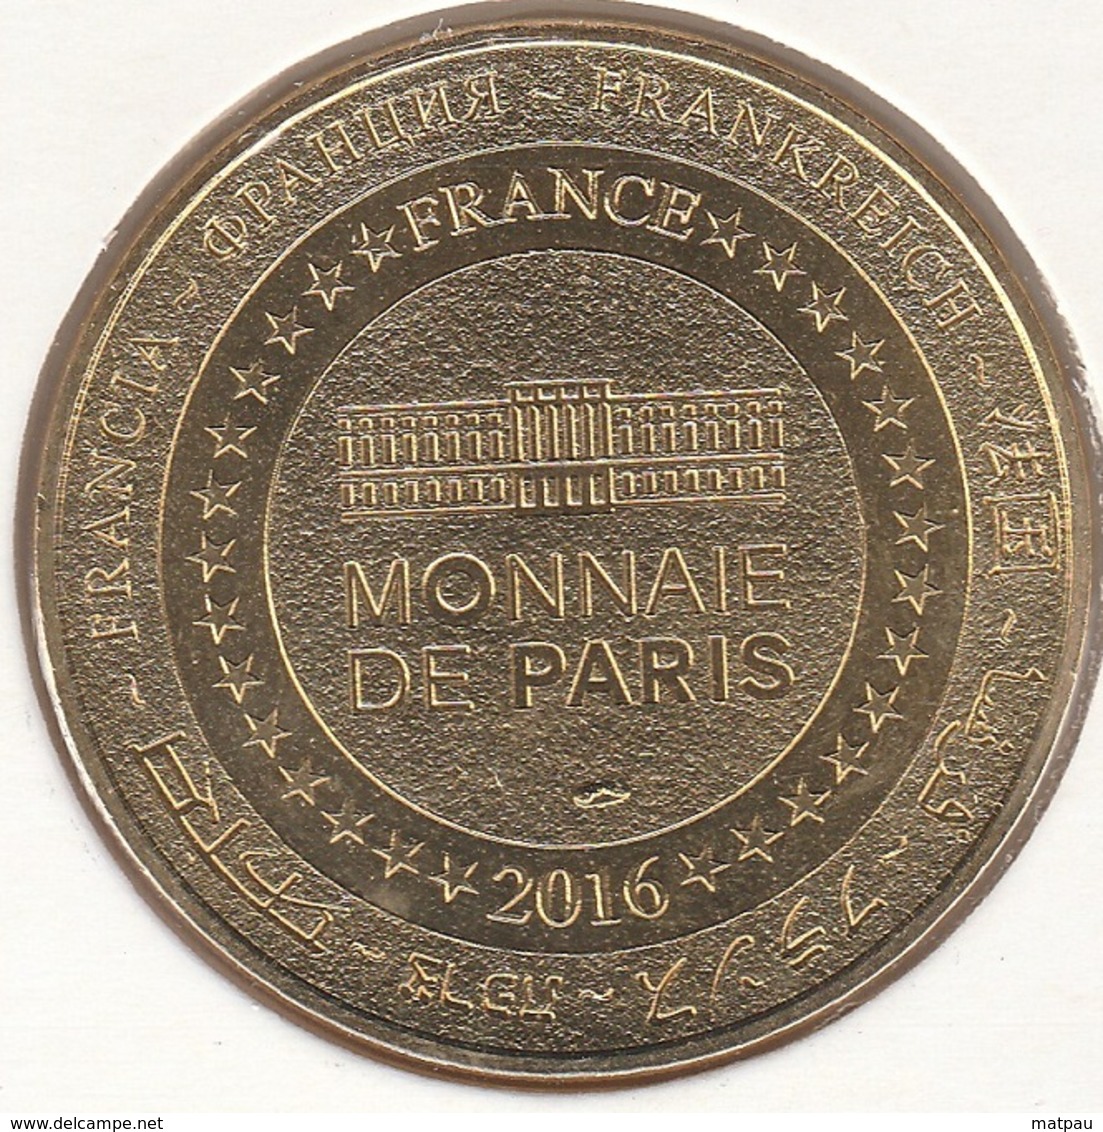 MONNAIE DE PARIS 63 CLERMONT-FERRAND L'Aventure Michelin - Collection Bibendum – 1965 - 2016 - 2016